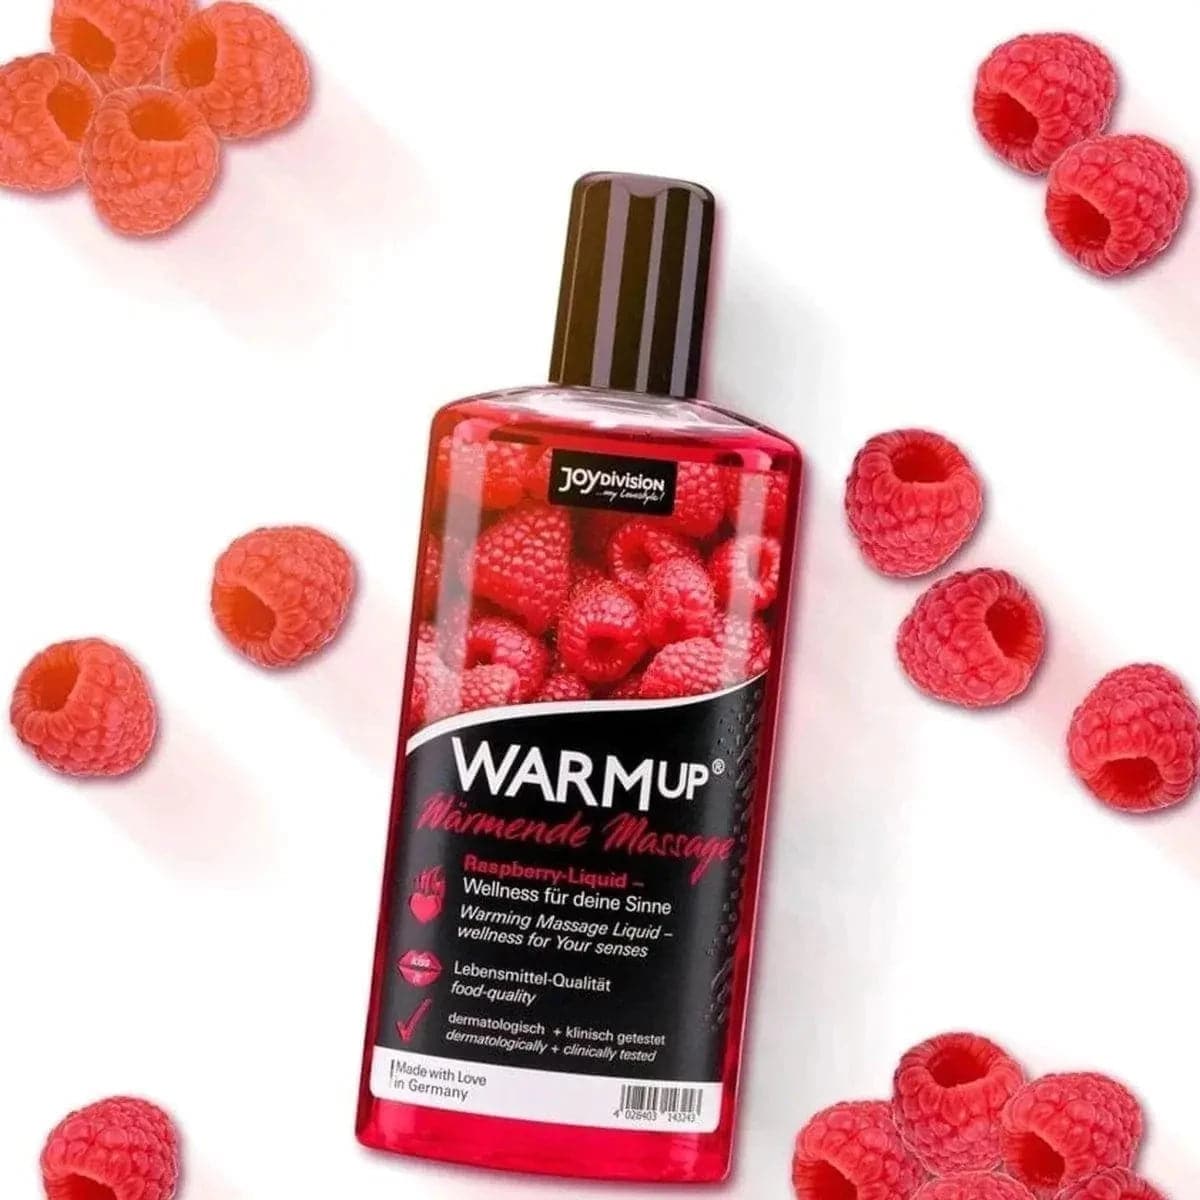 WARMup - Óleo Massagem Comestível Framboesa 150ml - Aquecimento e Aroma de Fruta